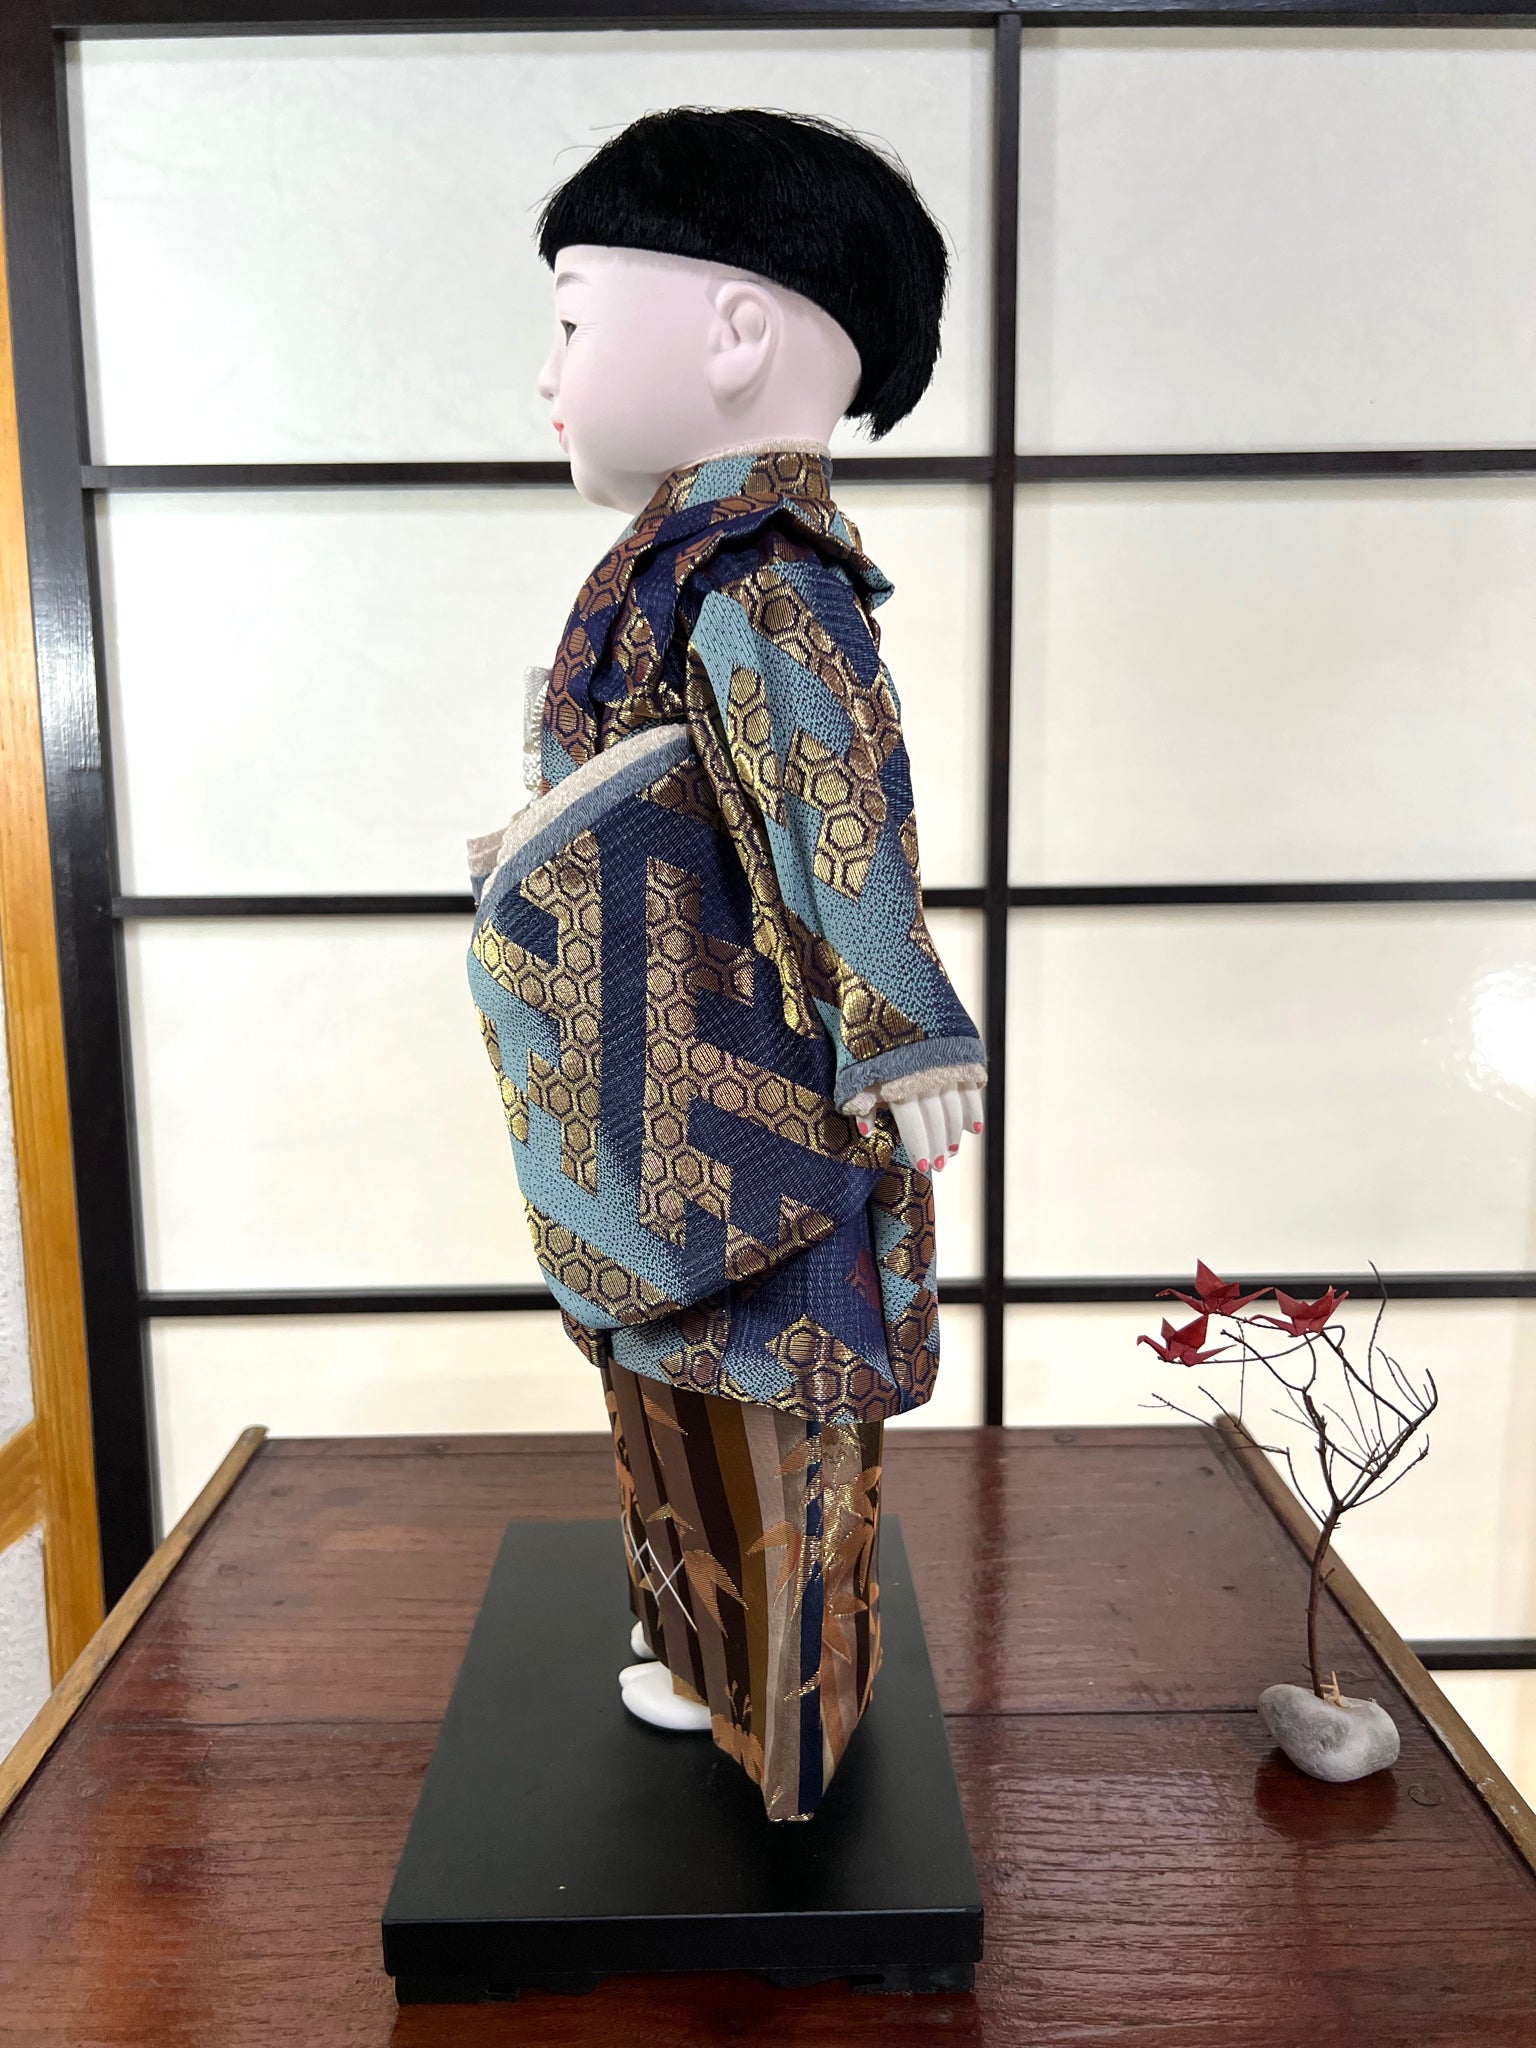 poupée japonaise Ichimatsu garçon, en kimono en soie bleu et beige, vu du côté gauche